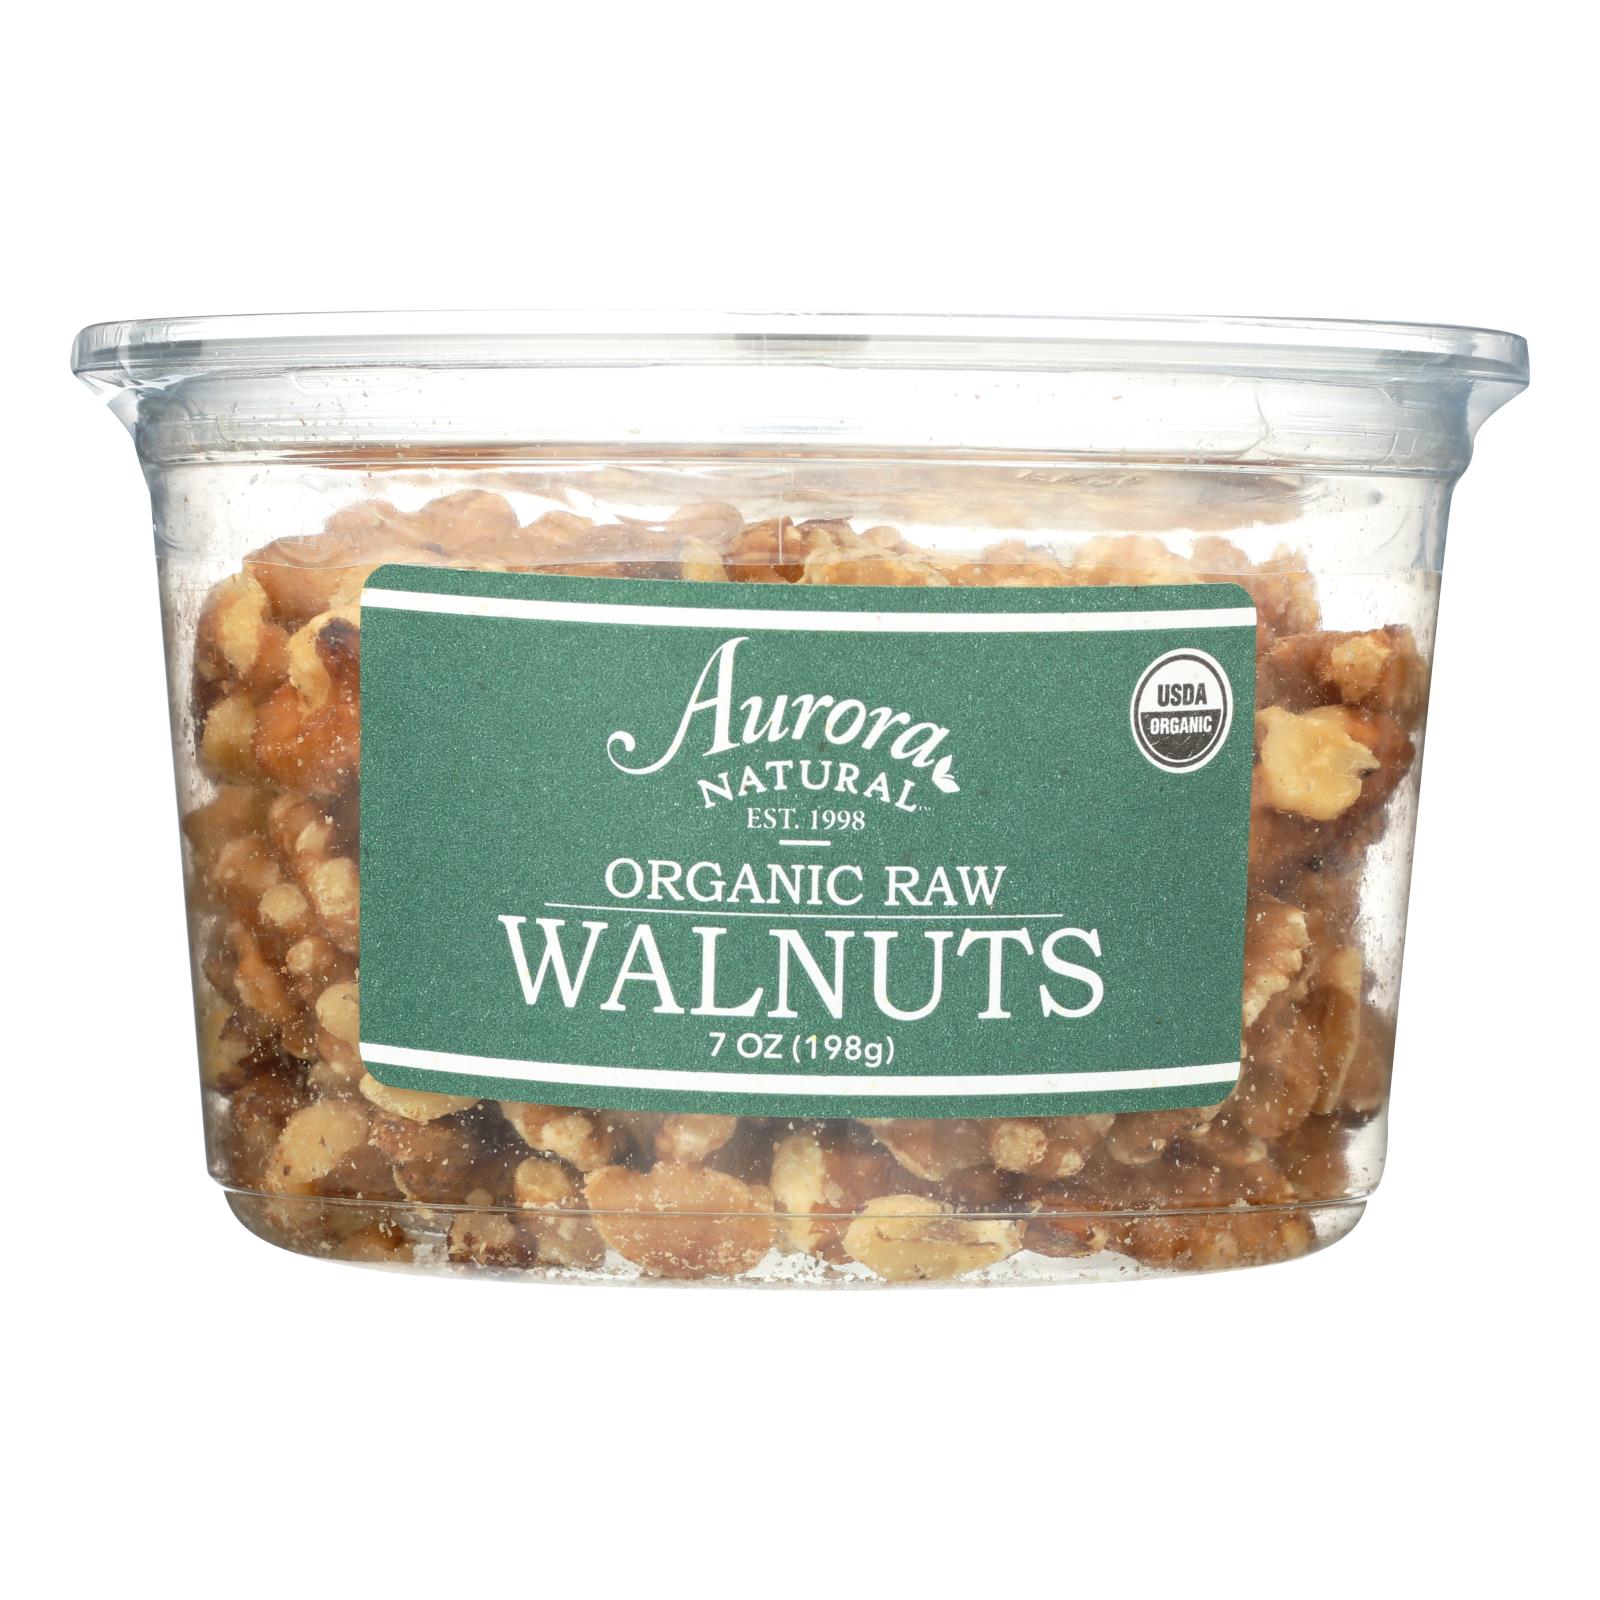 Aurora Natural Products - Organic Raw Walnuts - 12개 묶음상품 - 7 oz.